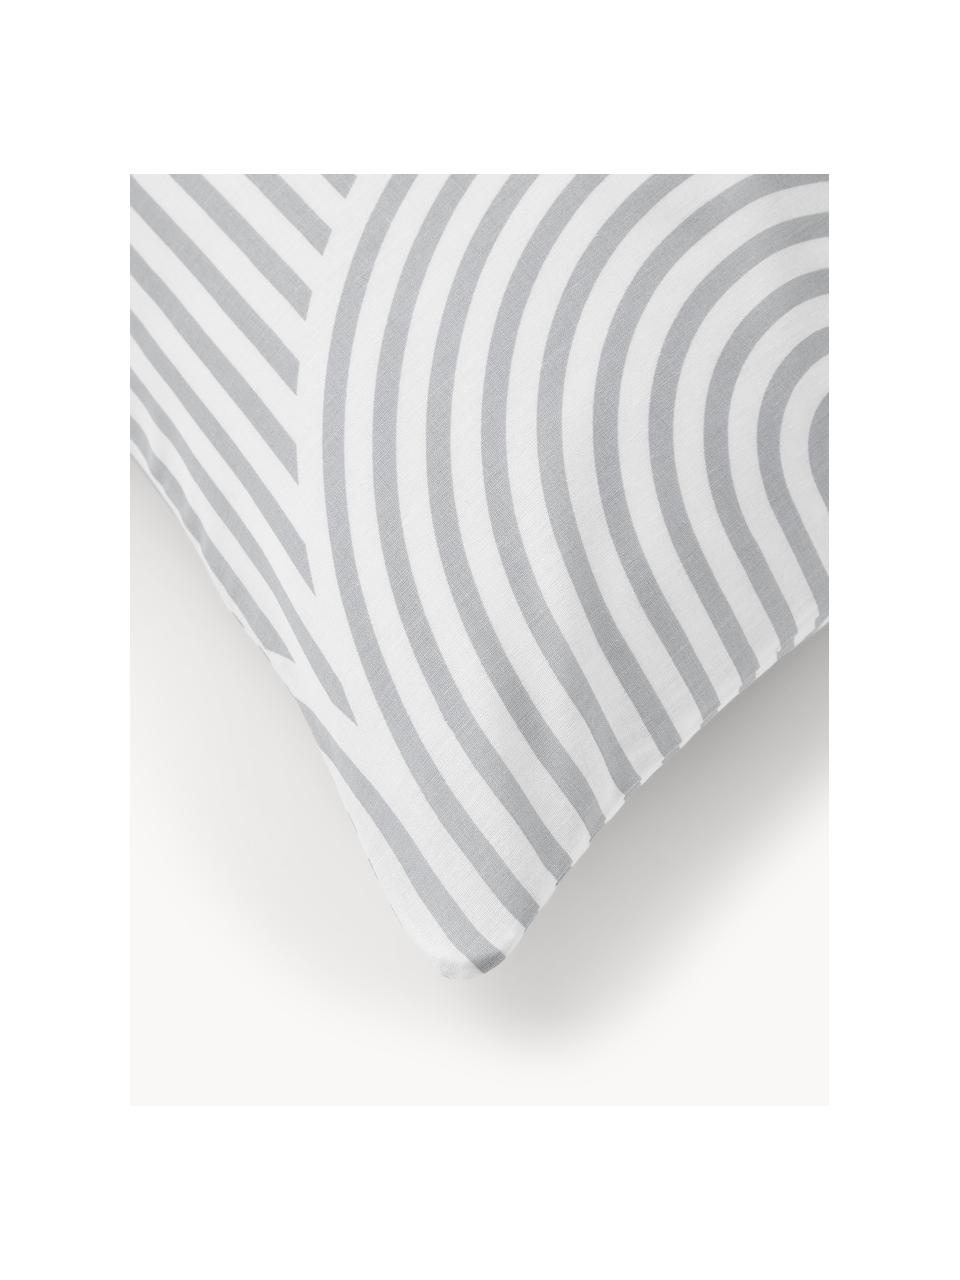 Poszewka na poduszkę z bawełny Arcs, Szary, biały, S 40 x D 80 cm